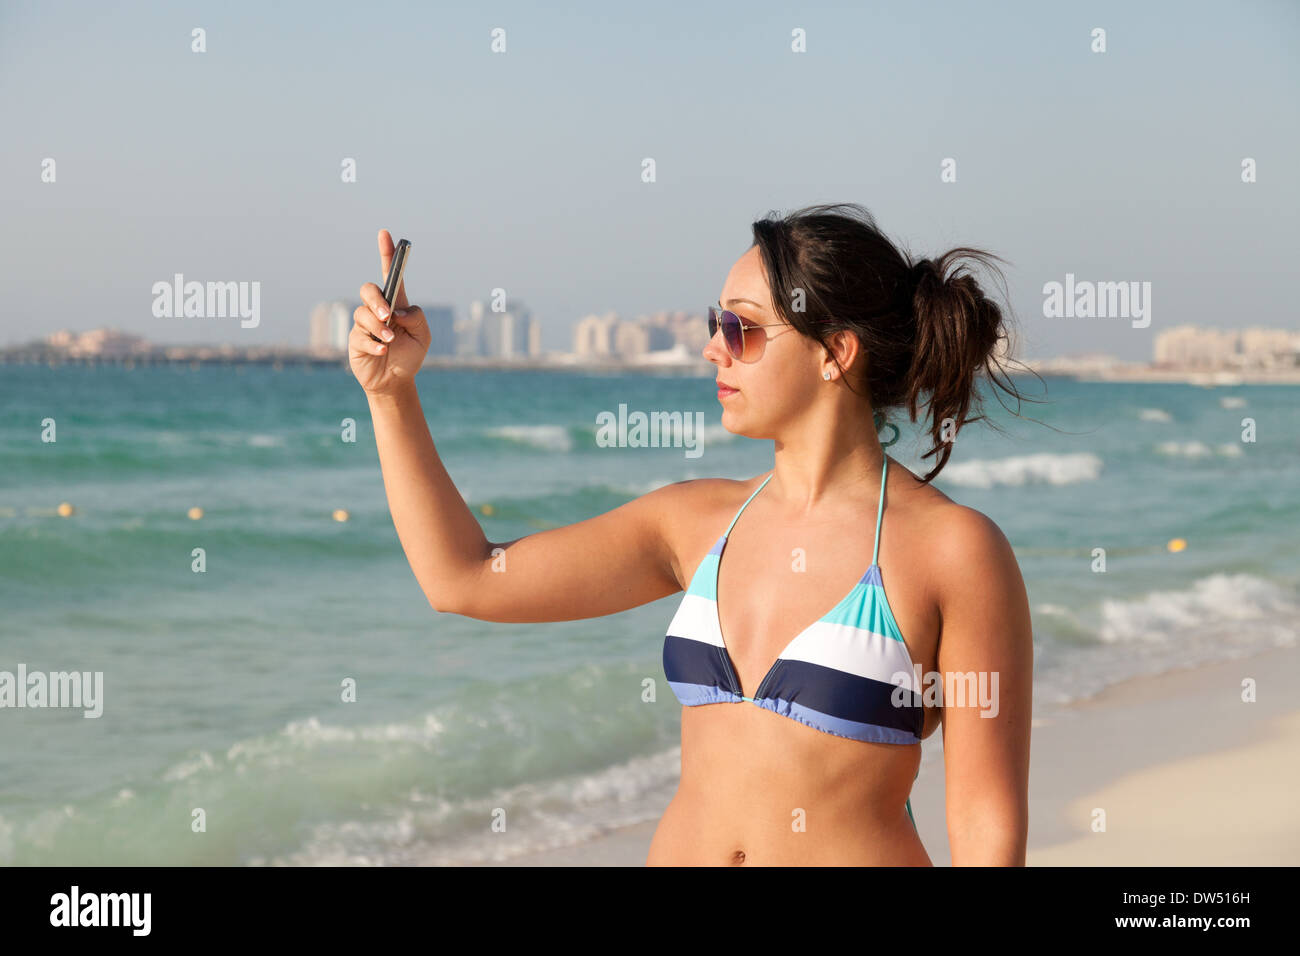 Woman taking a photo selfies sur la plage dans un bikini en vacances, la plage de Jumeirah, Dubai, Émirats arabes unis, ÉMIRATS ARABES UNIS, Moyen Orient Banque D'Images